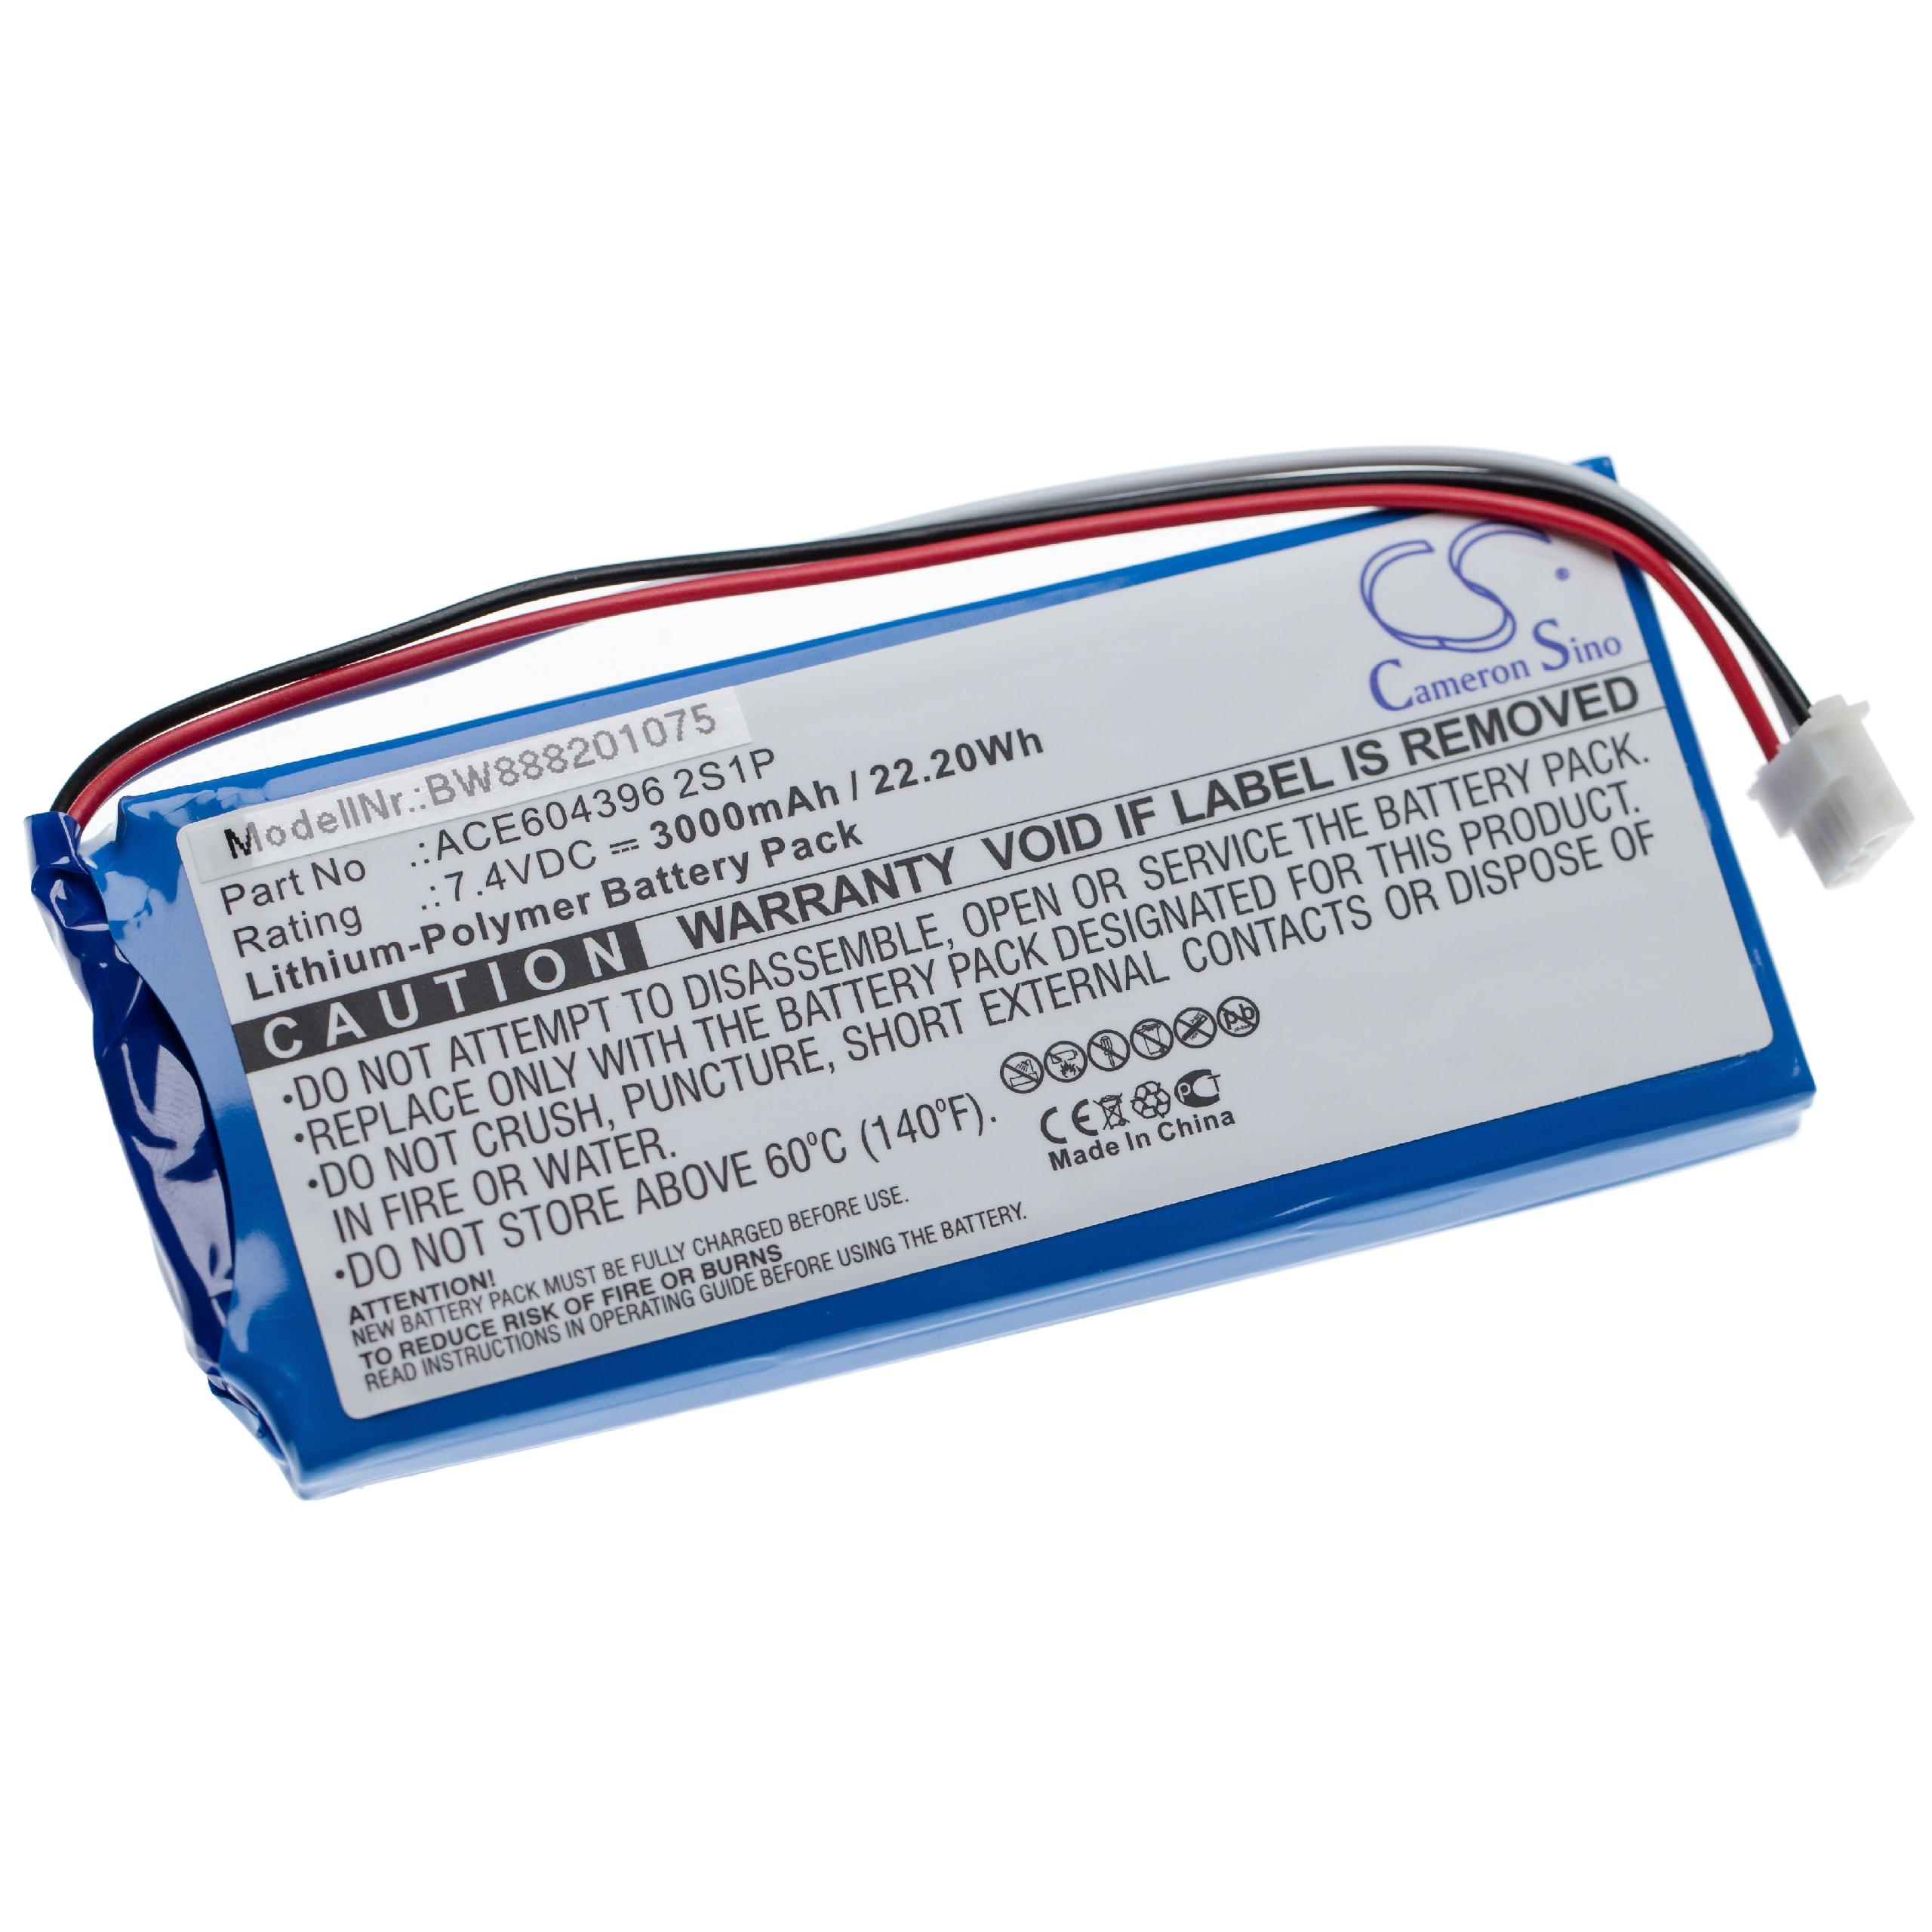 Batería reemplaza Aaronia E-0205, ACE604396 2S1P para dispositivo medición Aaronia - 3000 mAh 7,4 V Li-poli